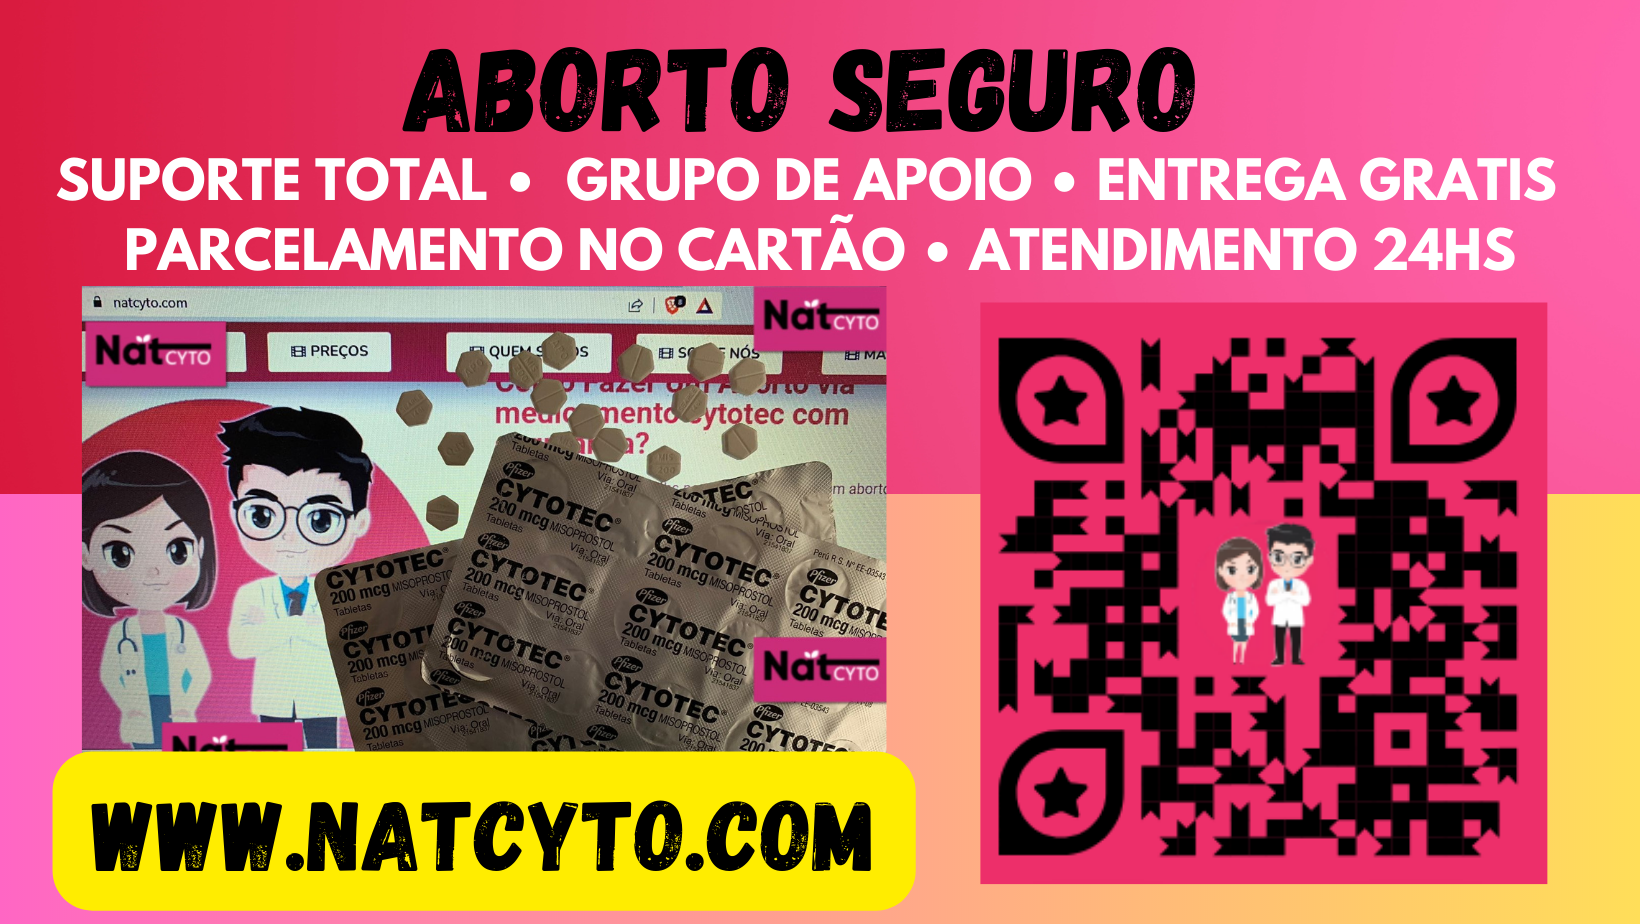 SUPORTE TOTAL « GRUPO DE APO
PARCELAMENTO NO CARTAO - A

gy

WWW.NATCYTO.COM